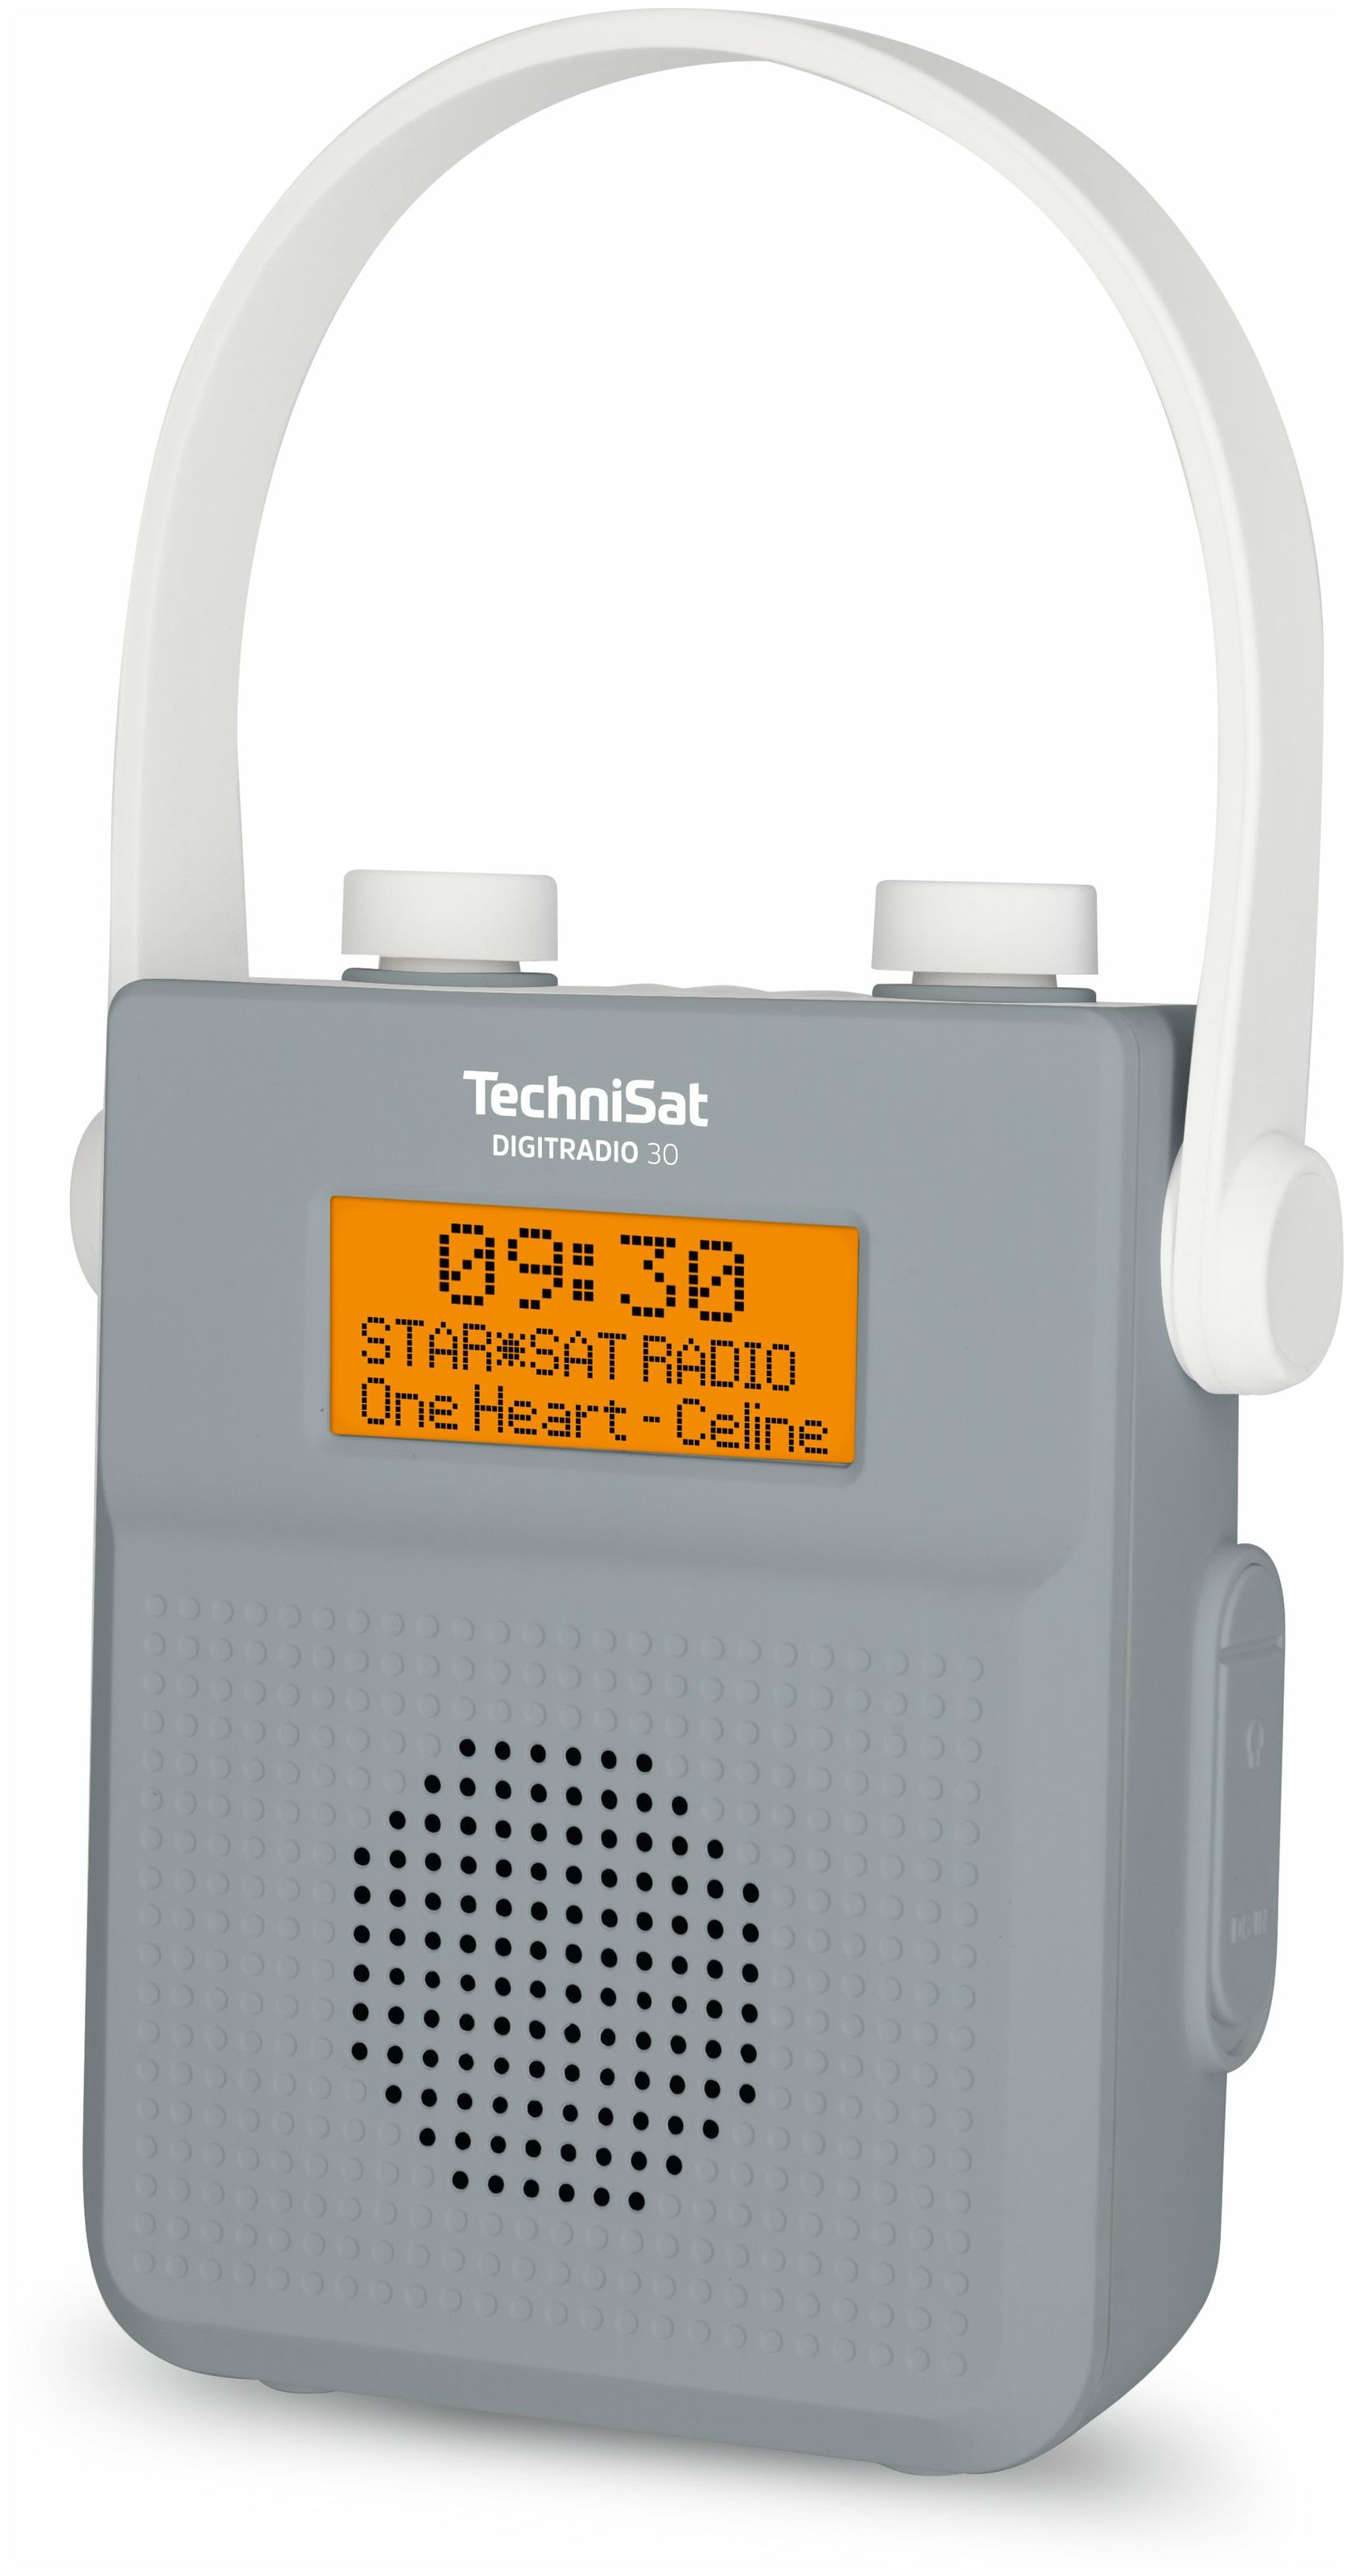 Digitradio (Grau) TechniSat IPX5 Radio 30 von Tragbar Technomarkt FM Bluetooth DAB+, expert